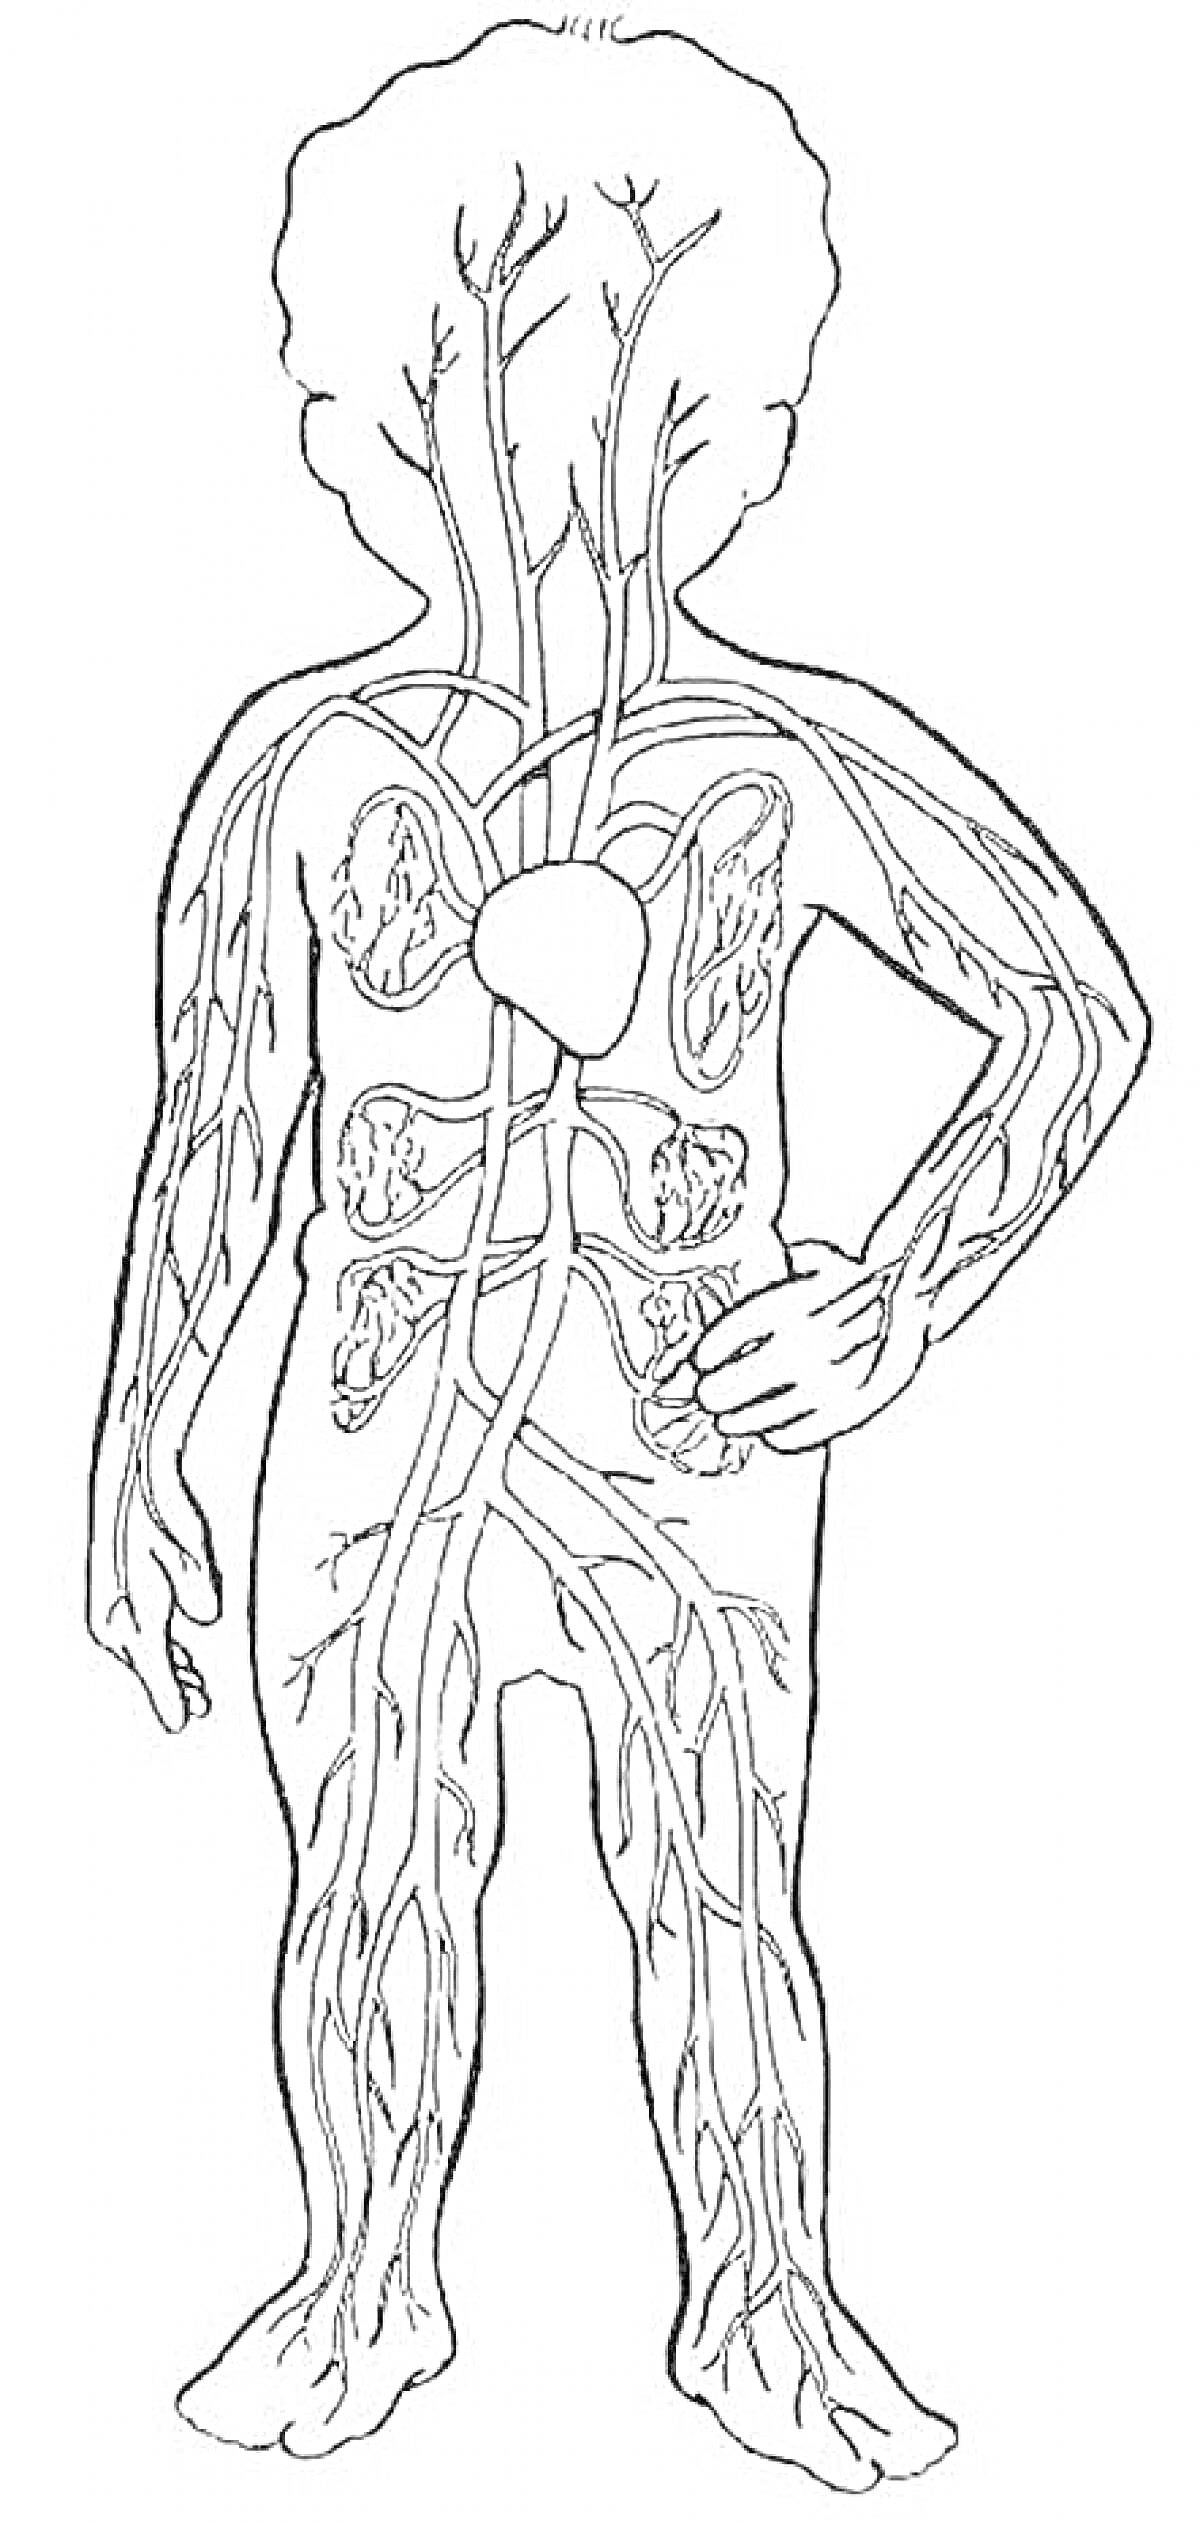 Раскраска Анатомия человека - сердечно-сосудистая система и основные органы (сердце, легкие, вены, артерии)